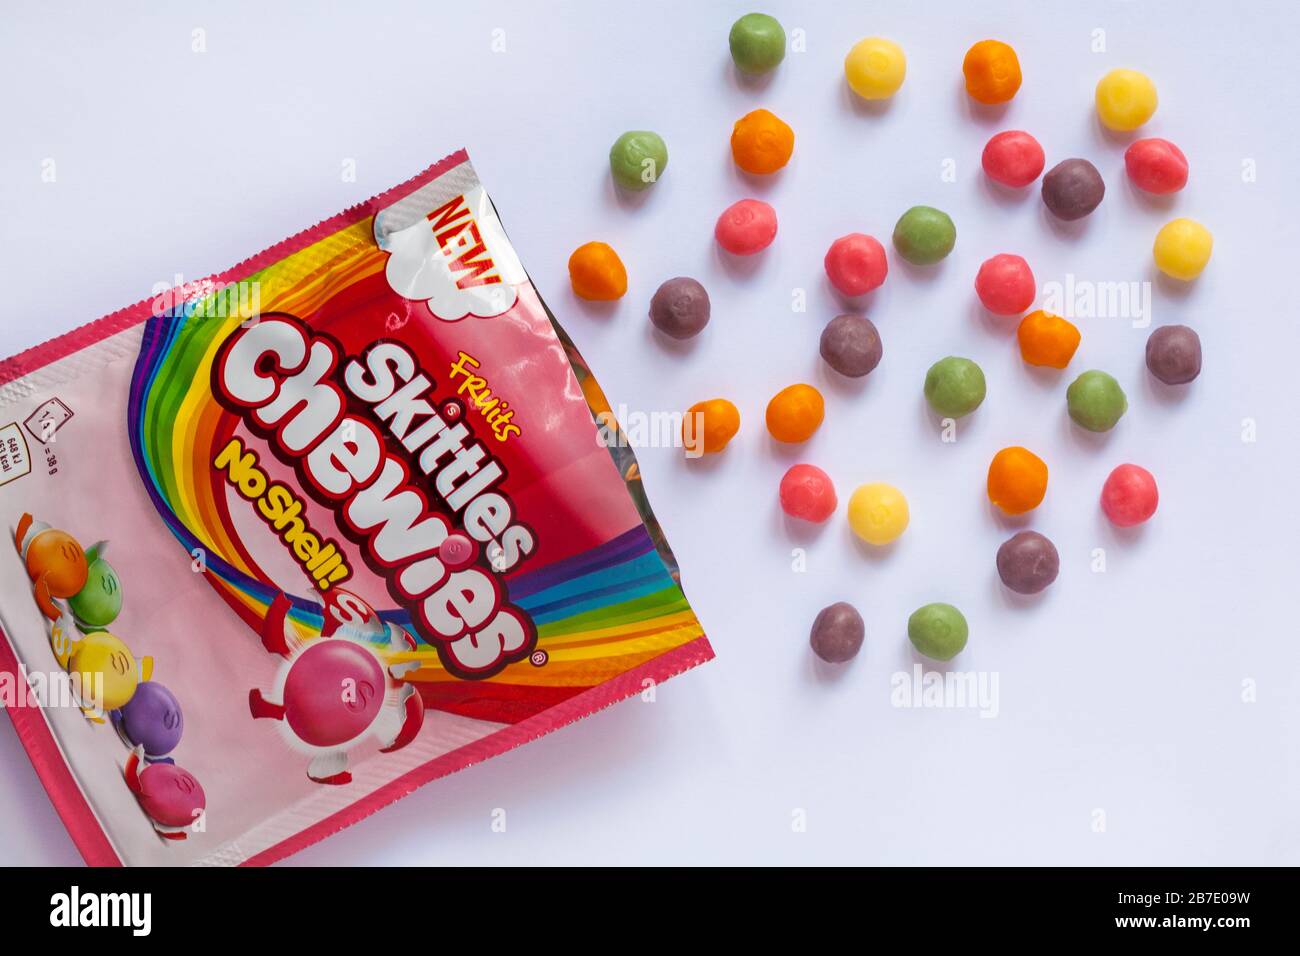 Obstpackung Skittles juckt Süßigkeiten keine Schale, die mit verschütteten,  verschütteten, auf weißem Hintergrund aufgesetzten Inhalten geöffnet wird -  neue weichere Textur - Süßigkeiten Stockfotografie - Alamy